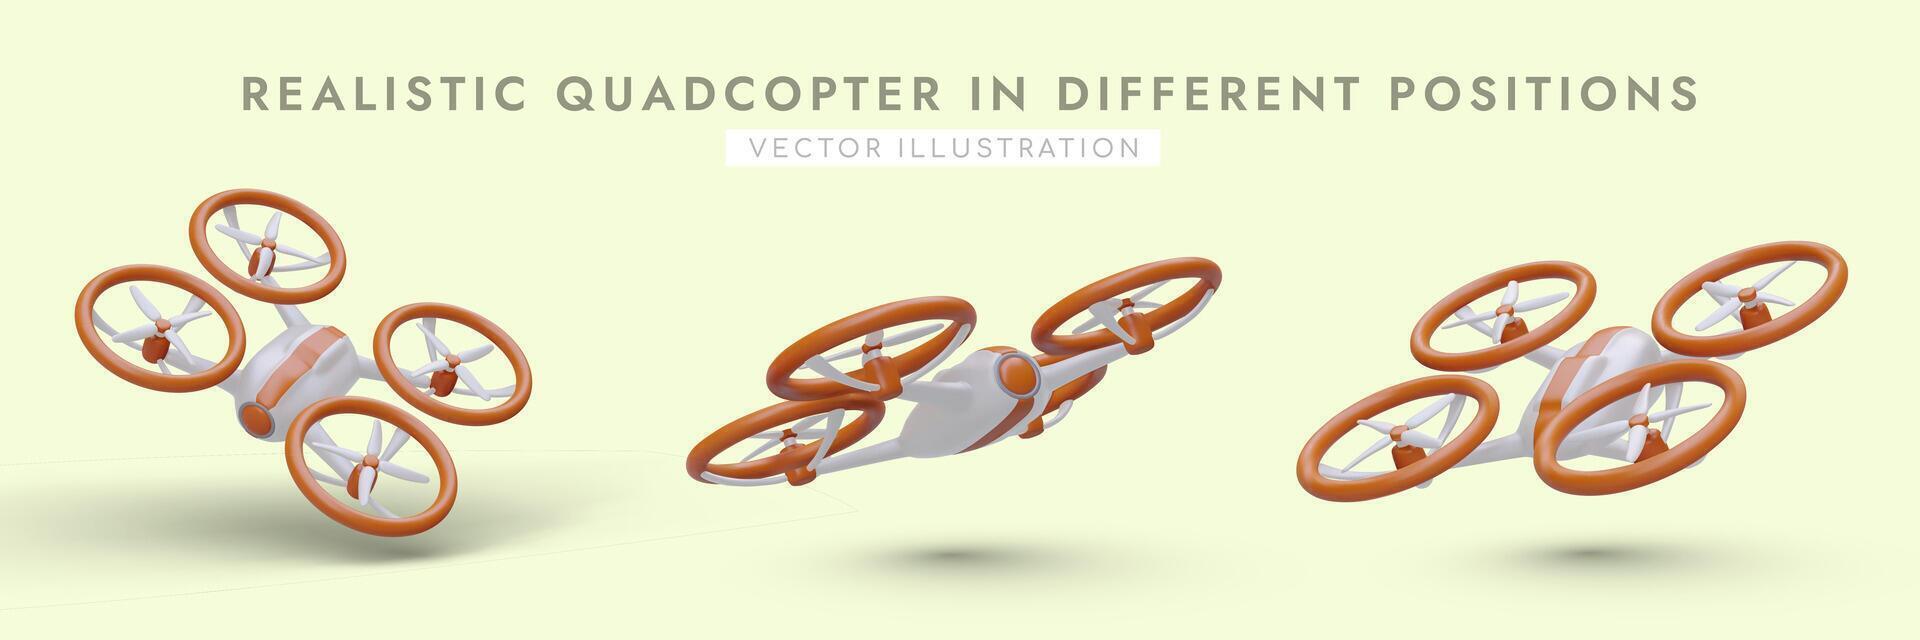 conjunto de realista cuadricópteros en diferente posiciones. volador observadores en remoto controlar vector